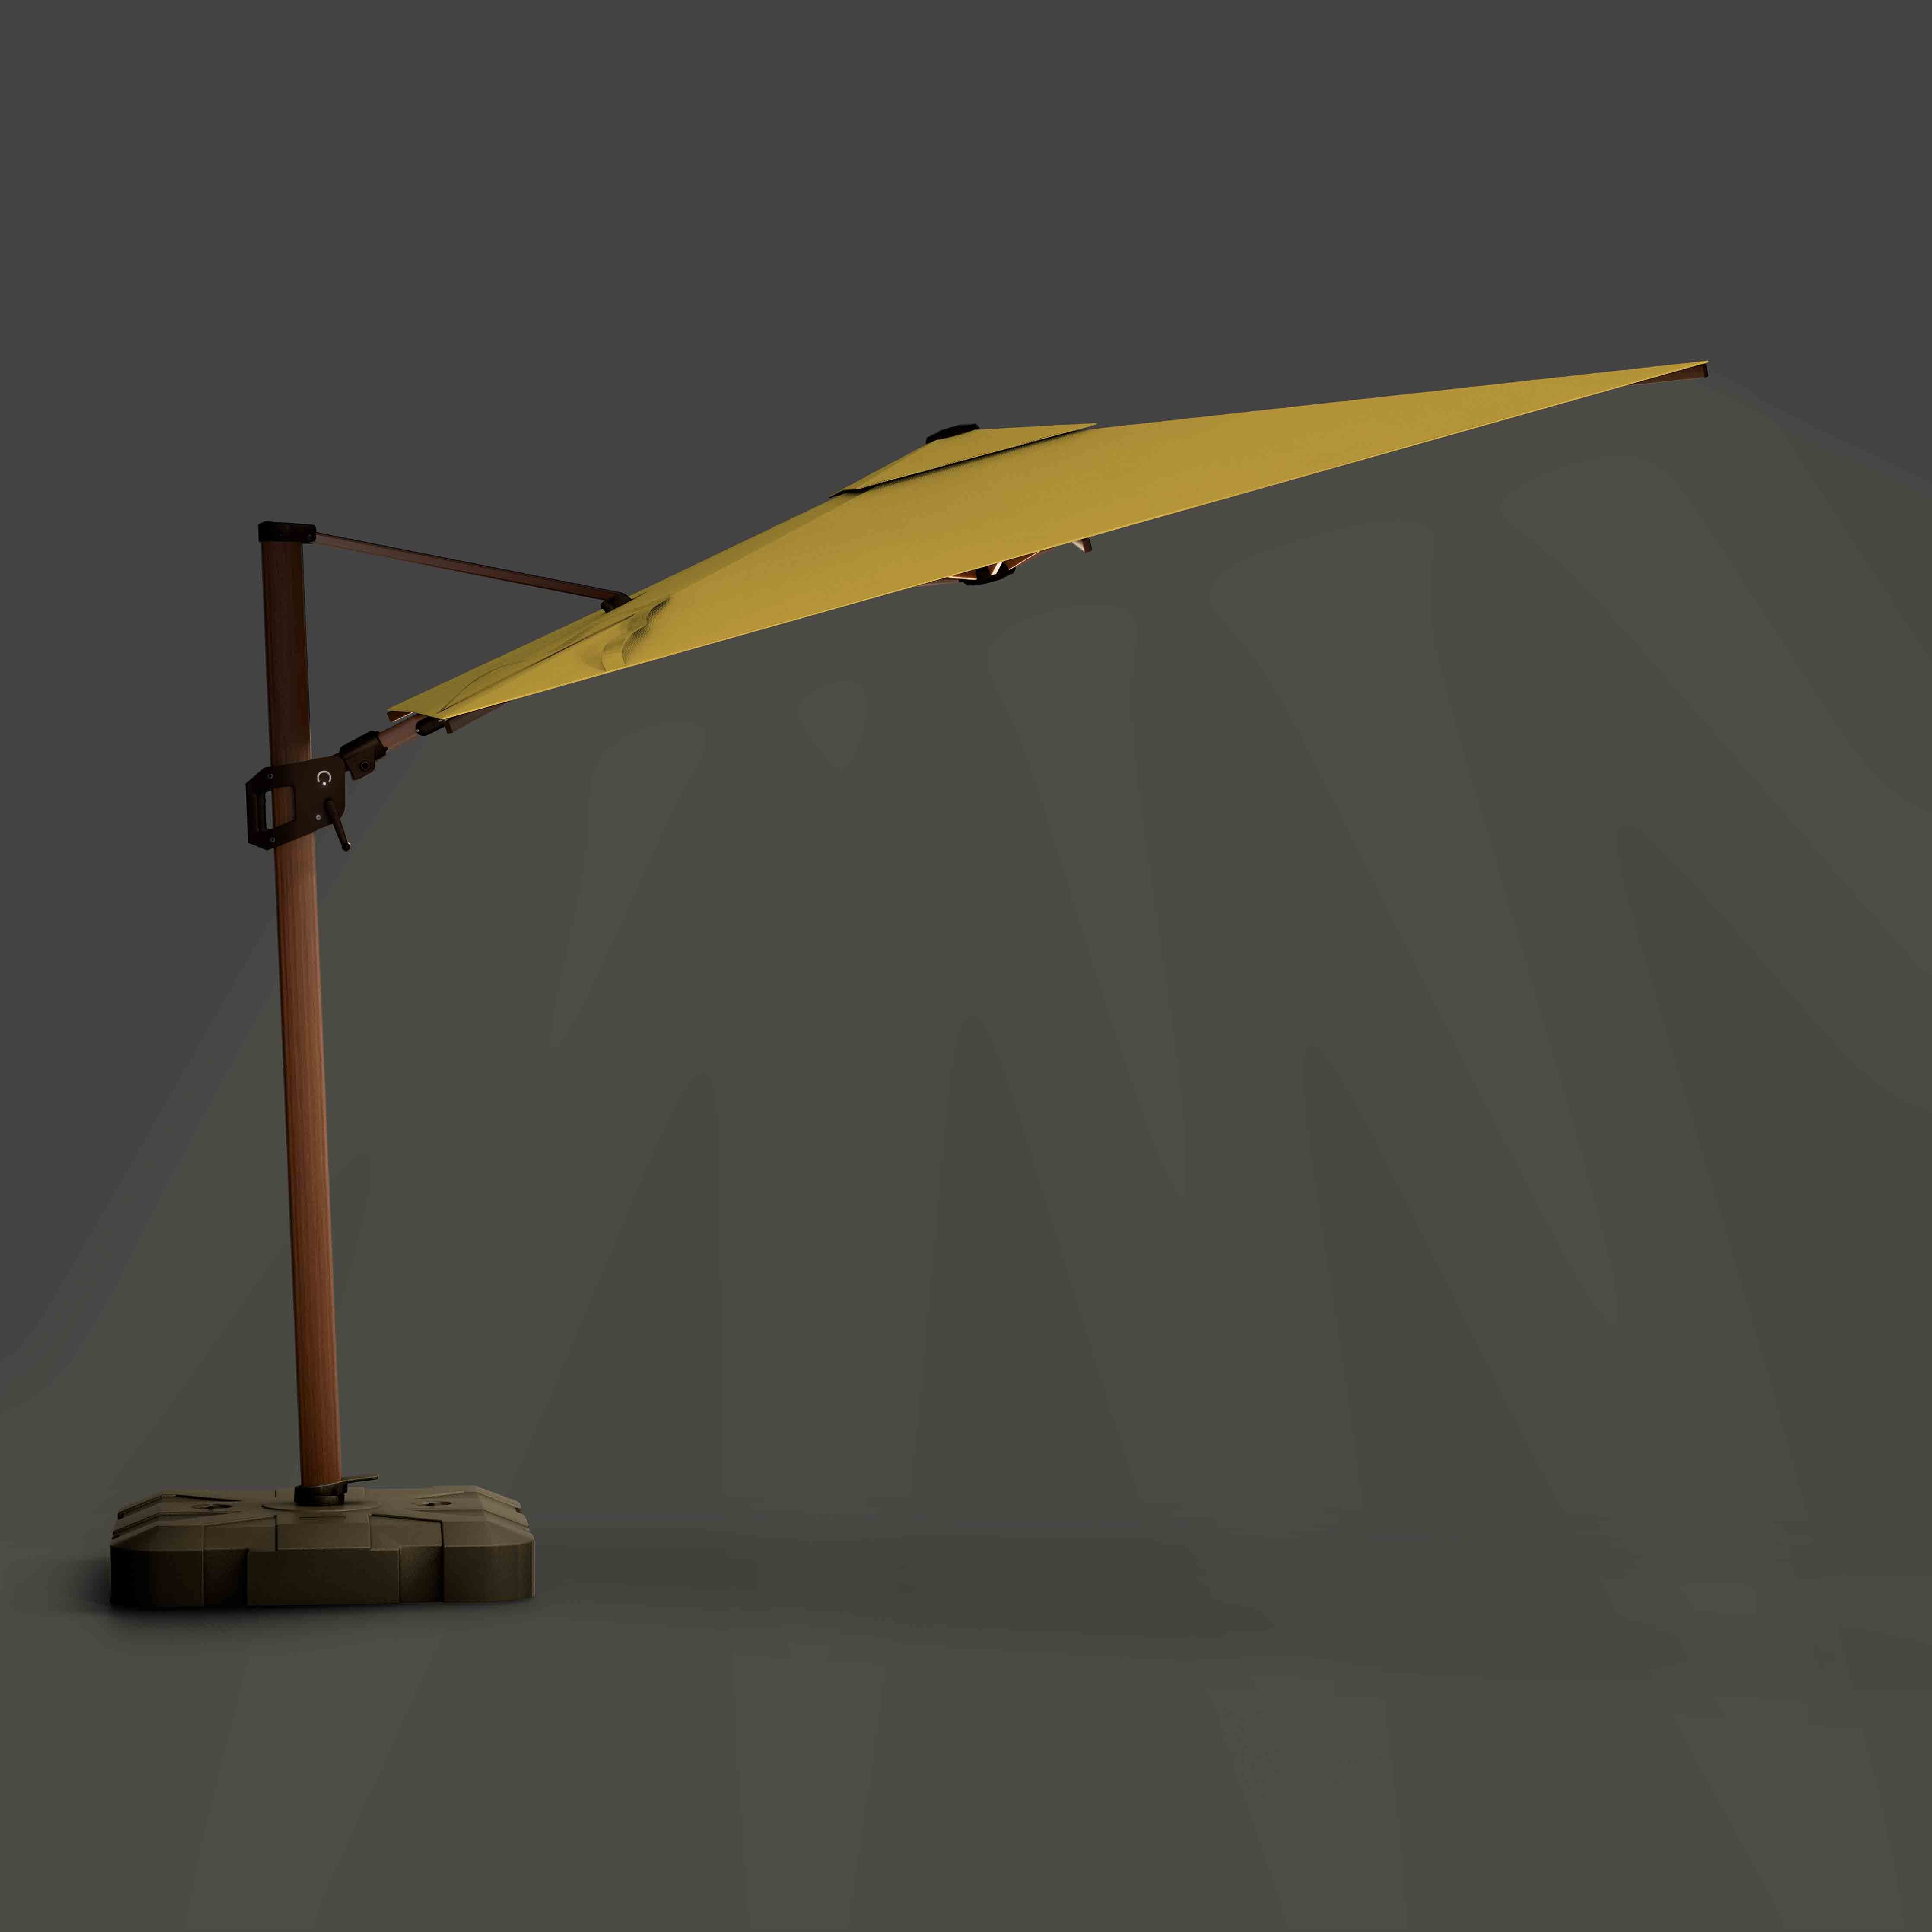 The Supreme Wooden™ - Sunbrella Yellow